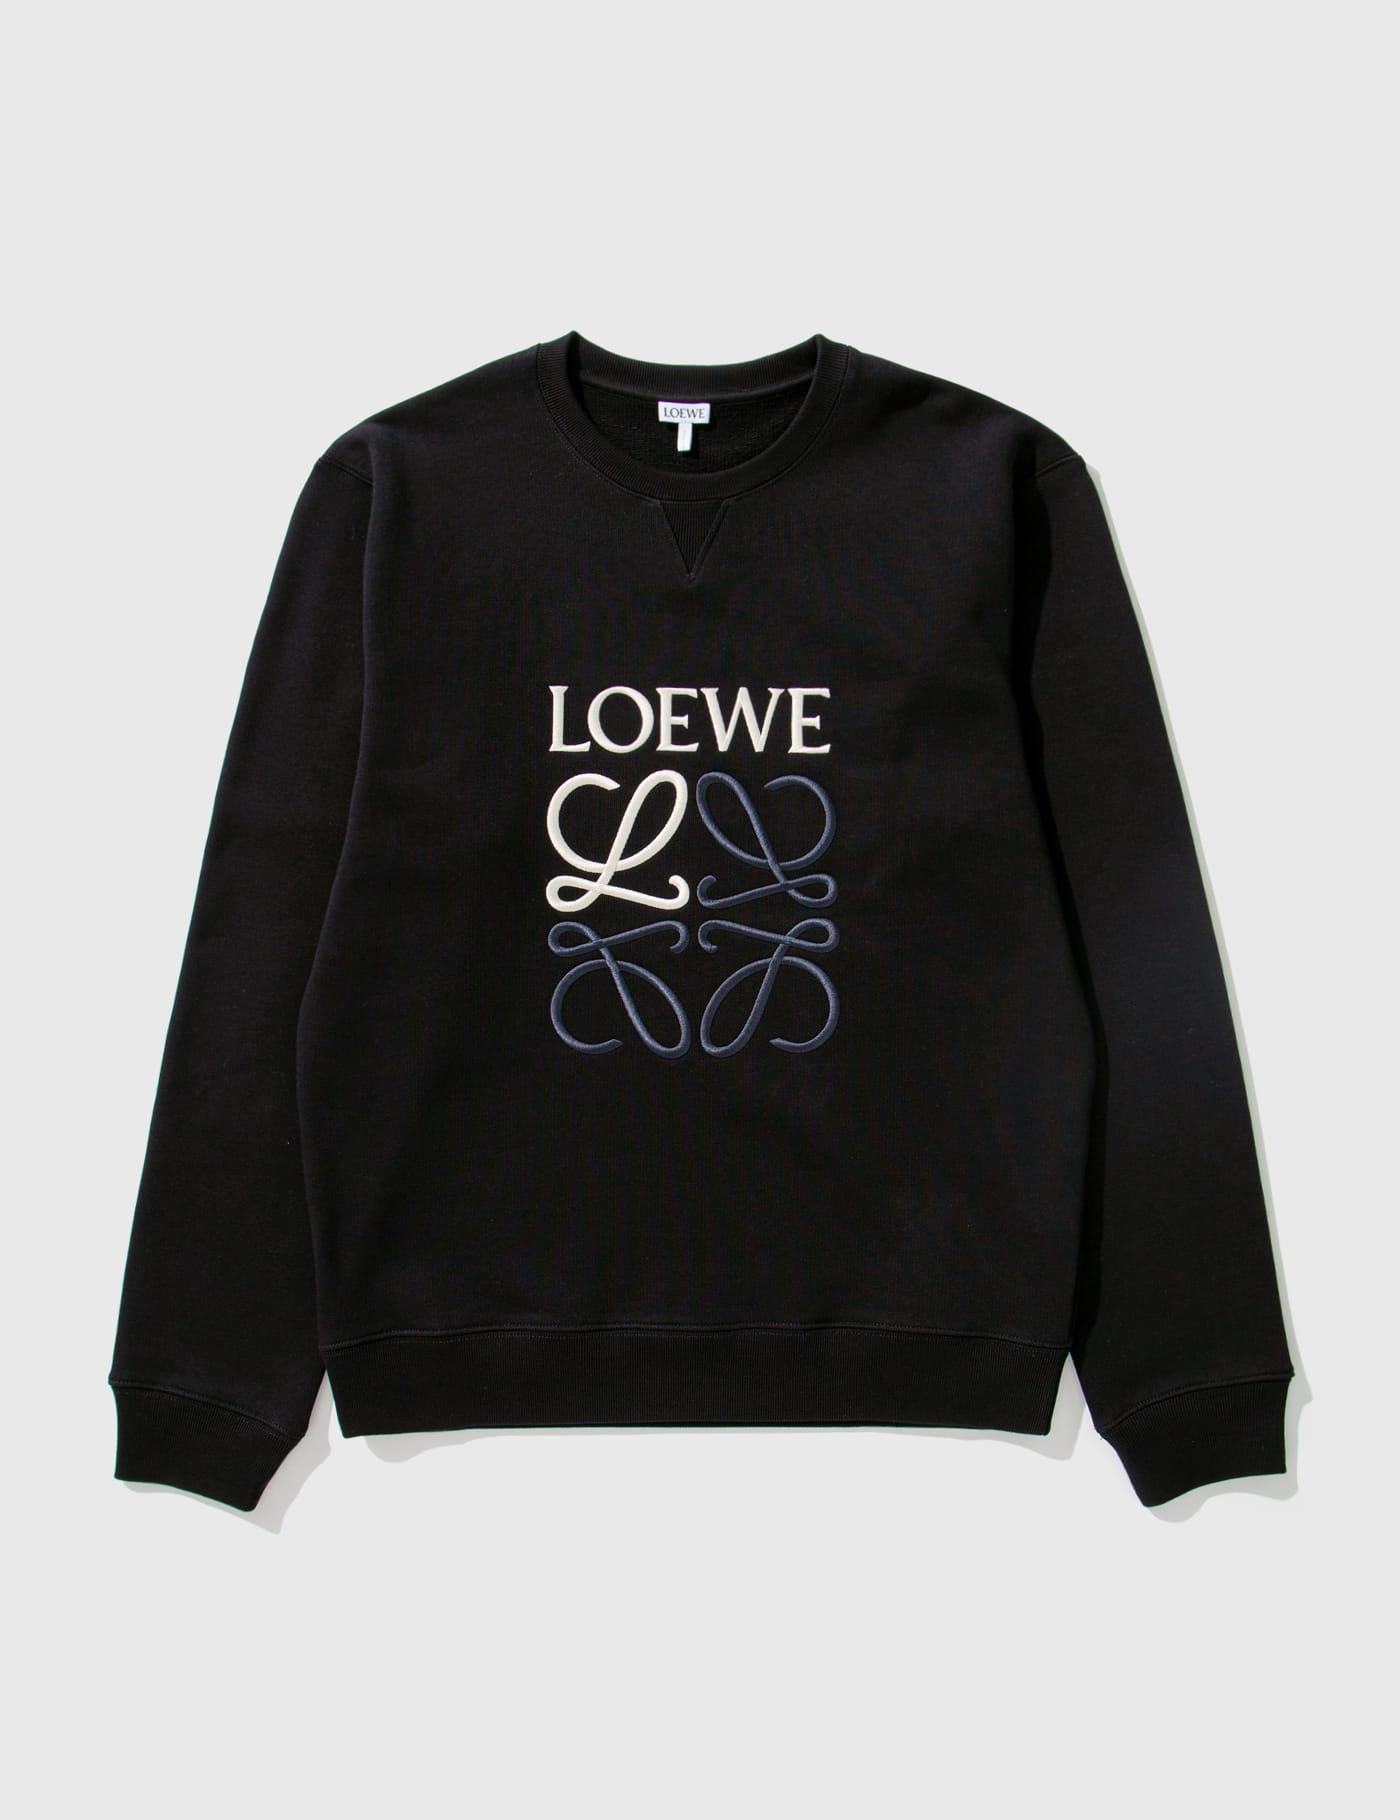 LOEWE Sweatshirts for Men | ModeSens